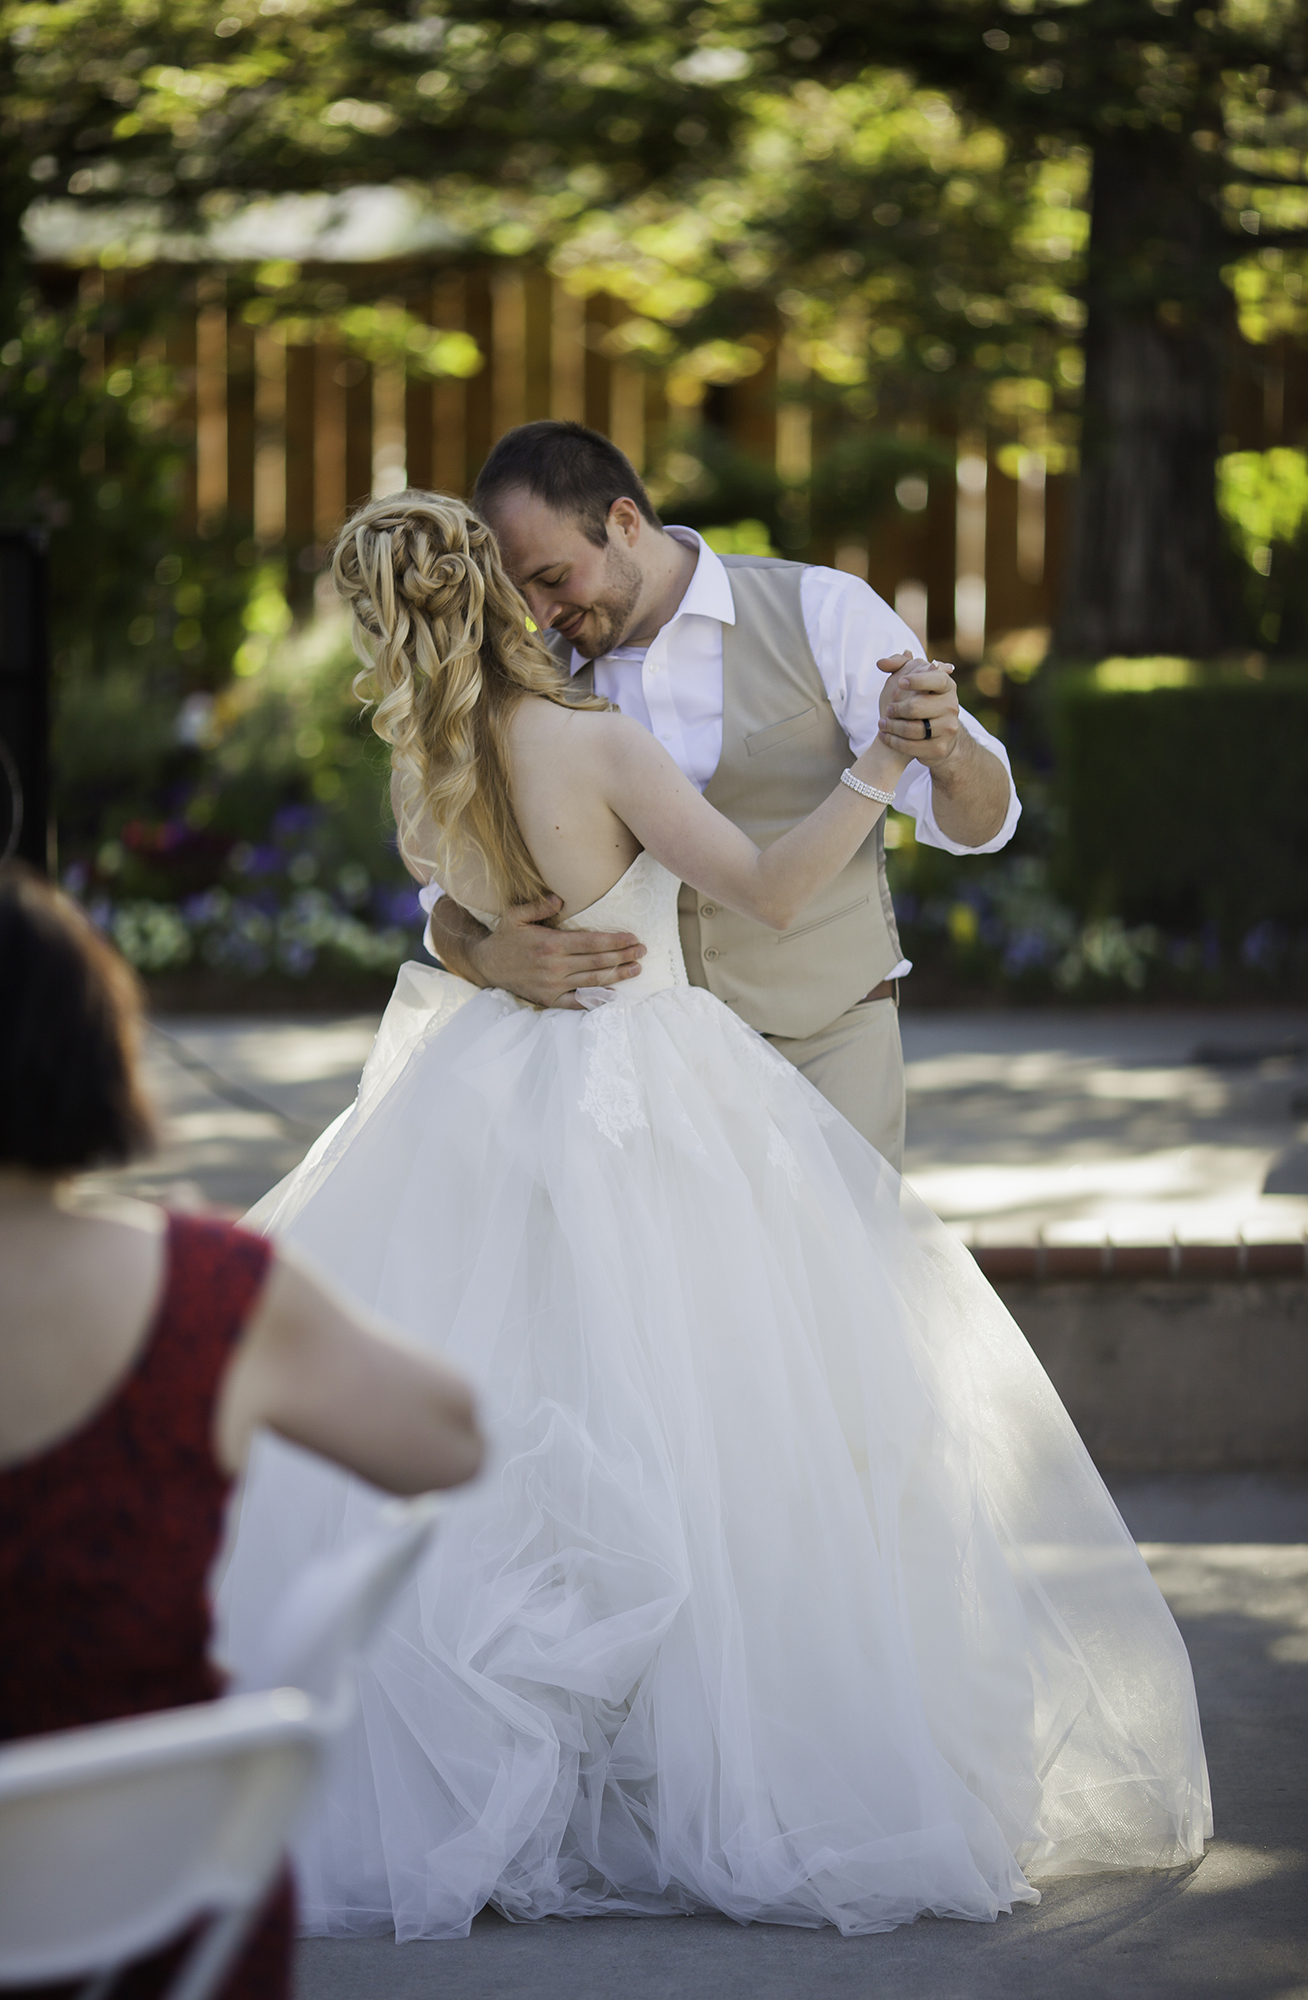 San Jose Wedding Photos - First Dance